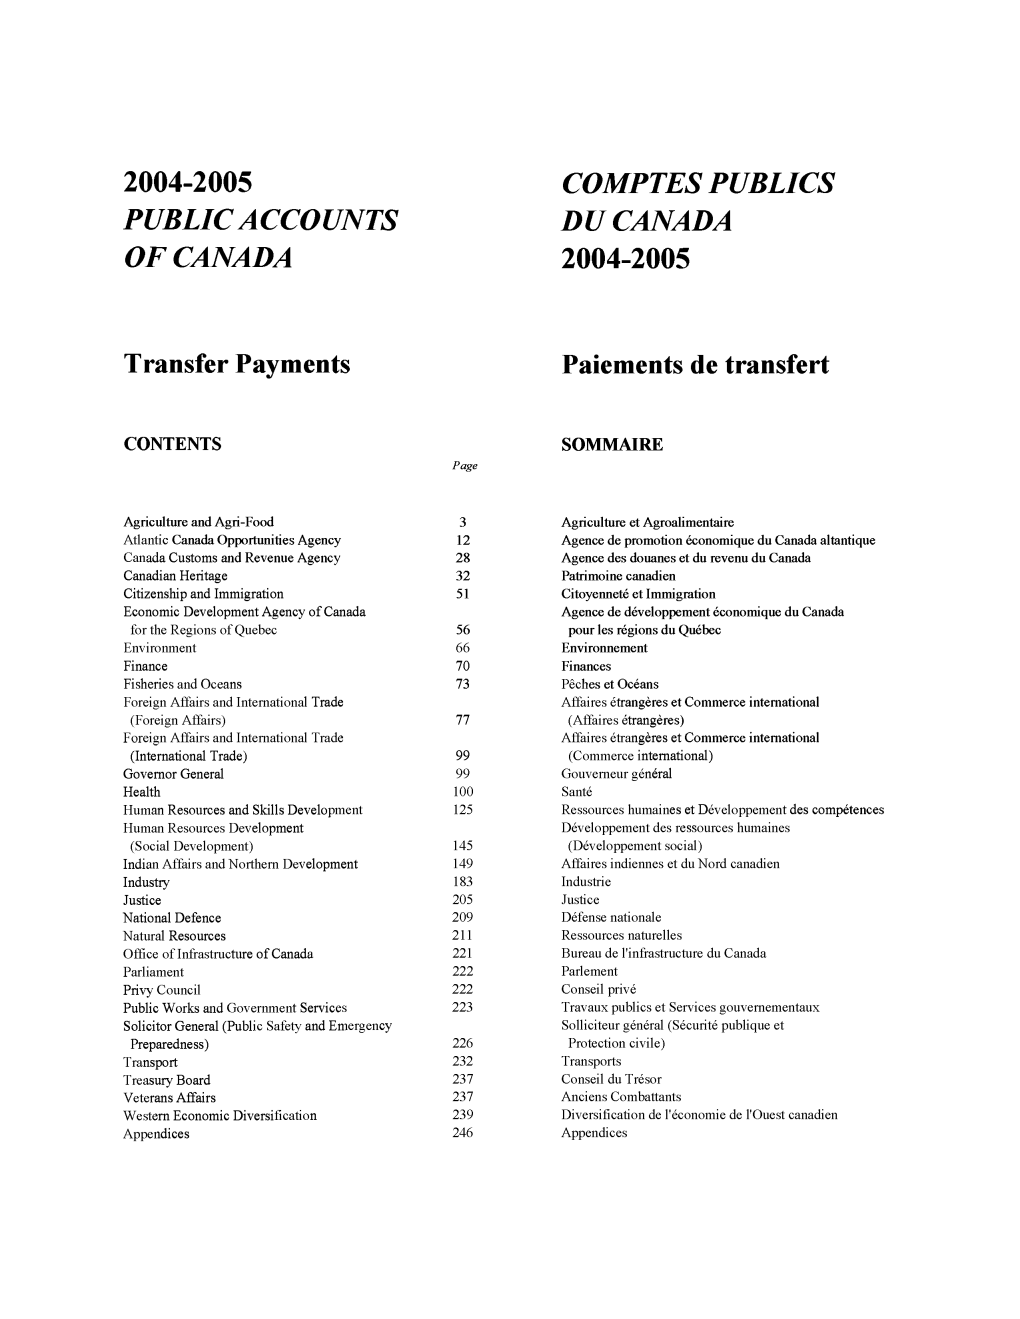 COMPTES PUBLICS DU CANADA 2004-2005 Paiements De Transfert